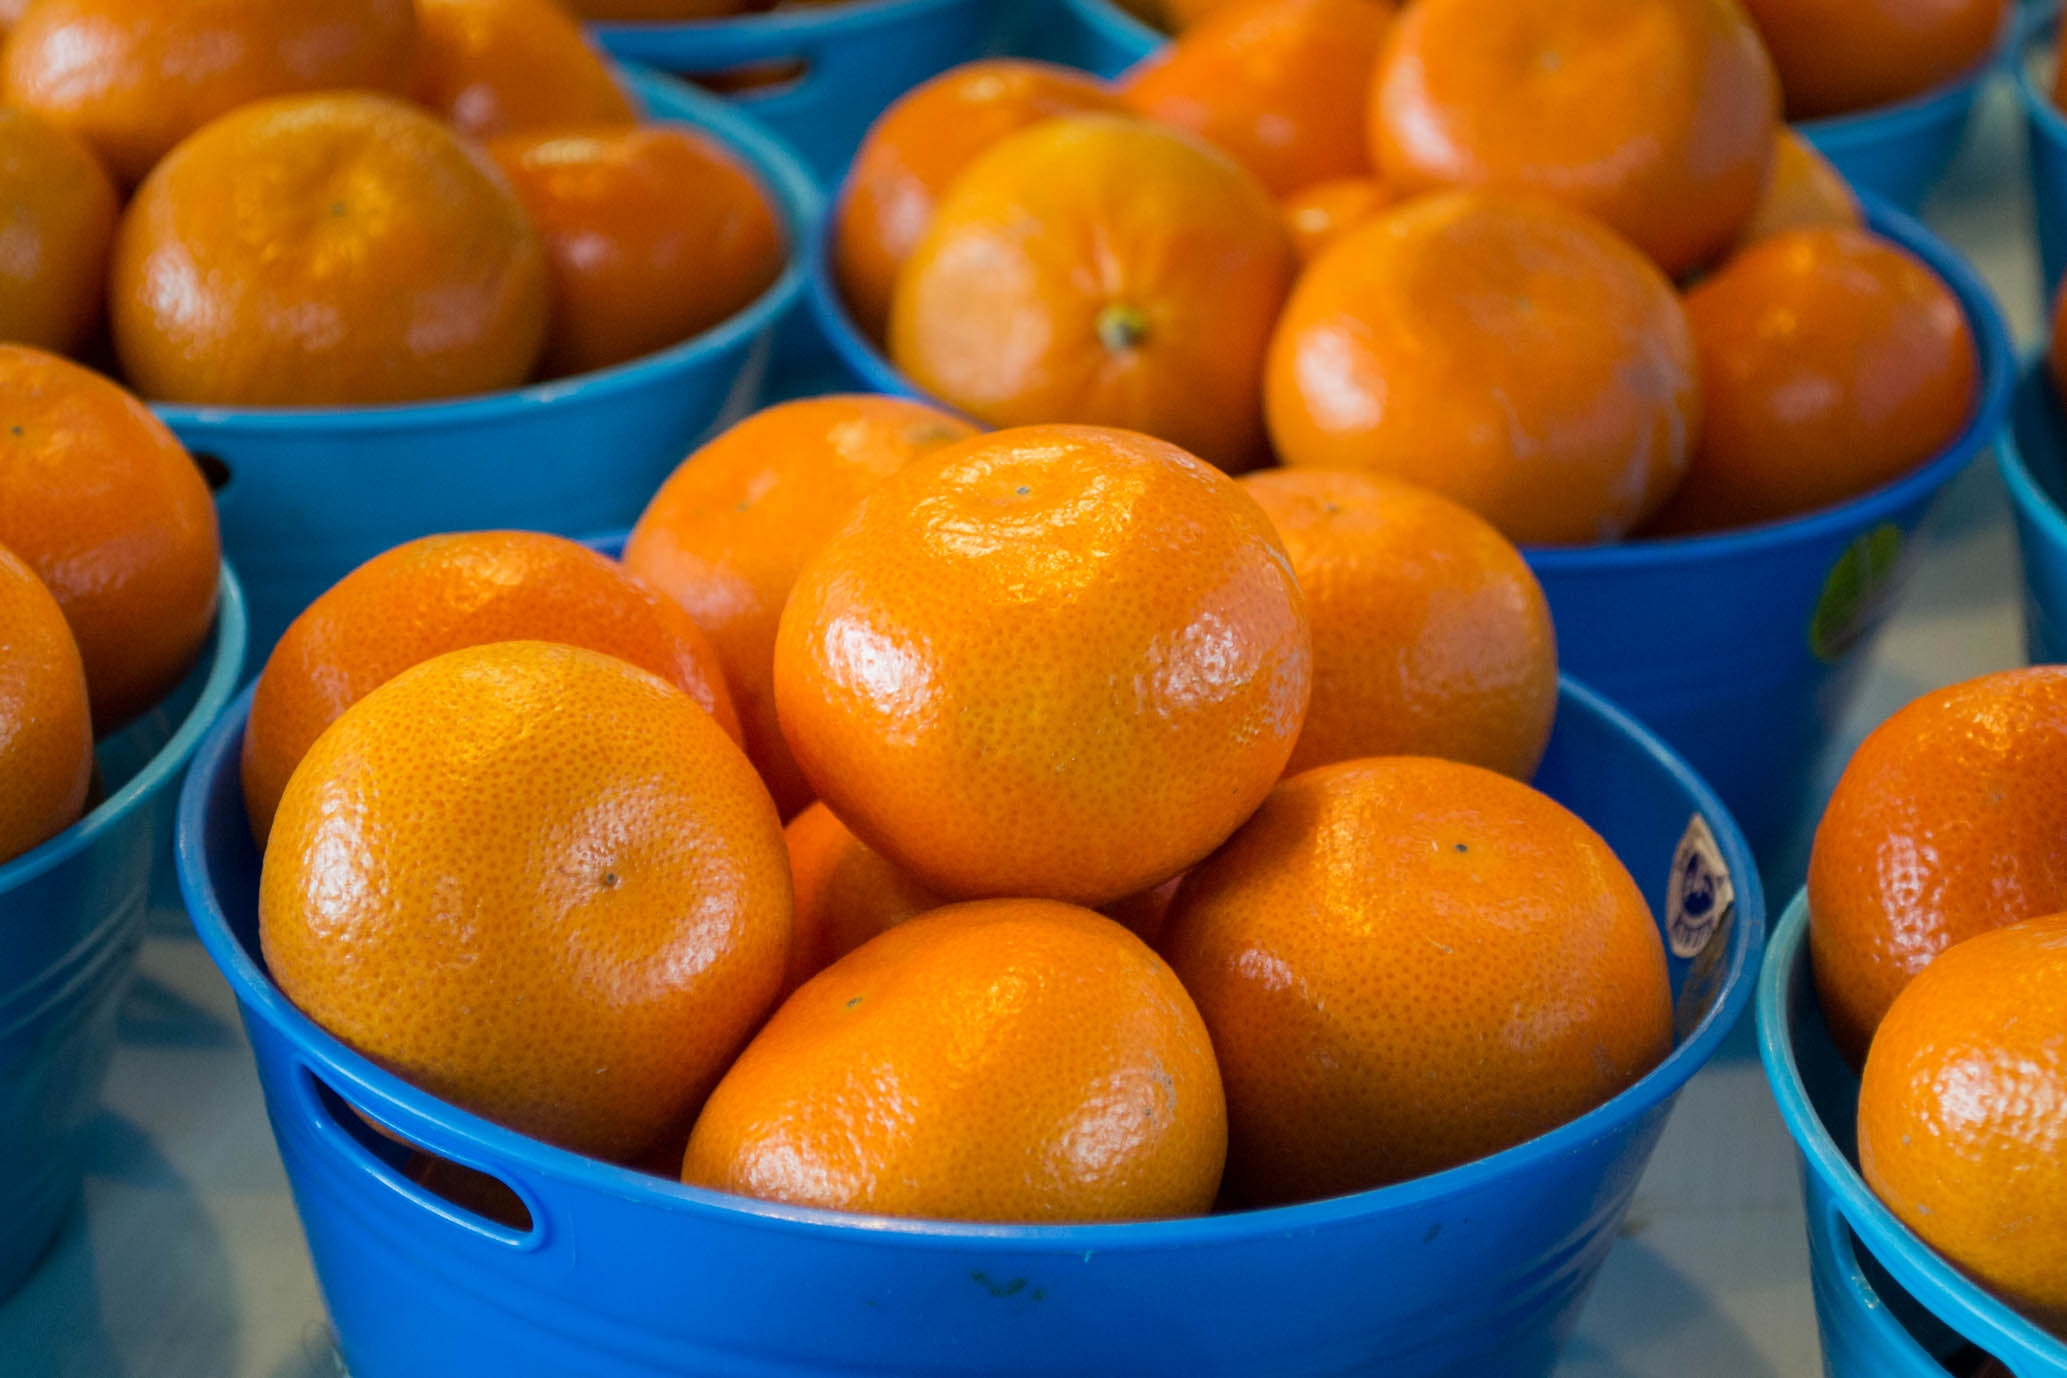 Des oranges dans une corbeille bleue, belle complémentarité